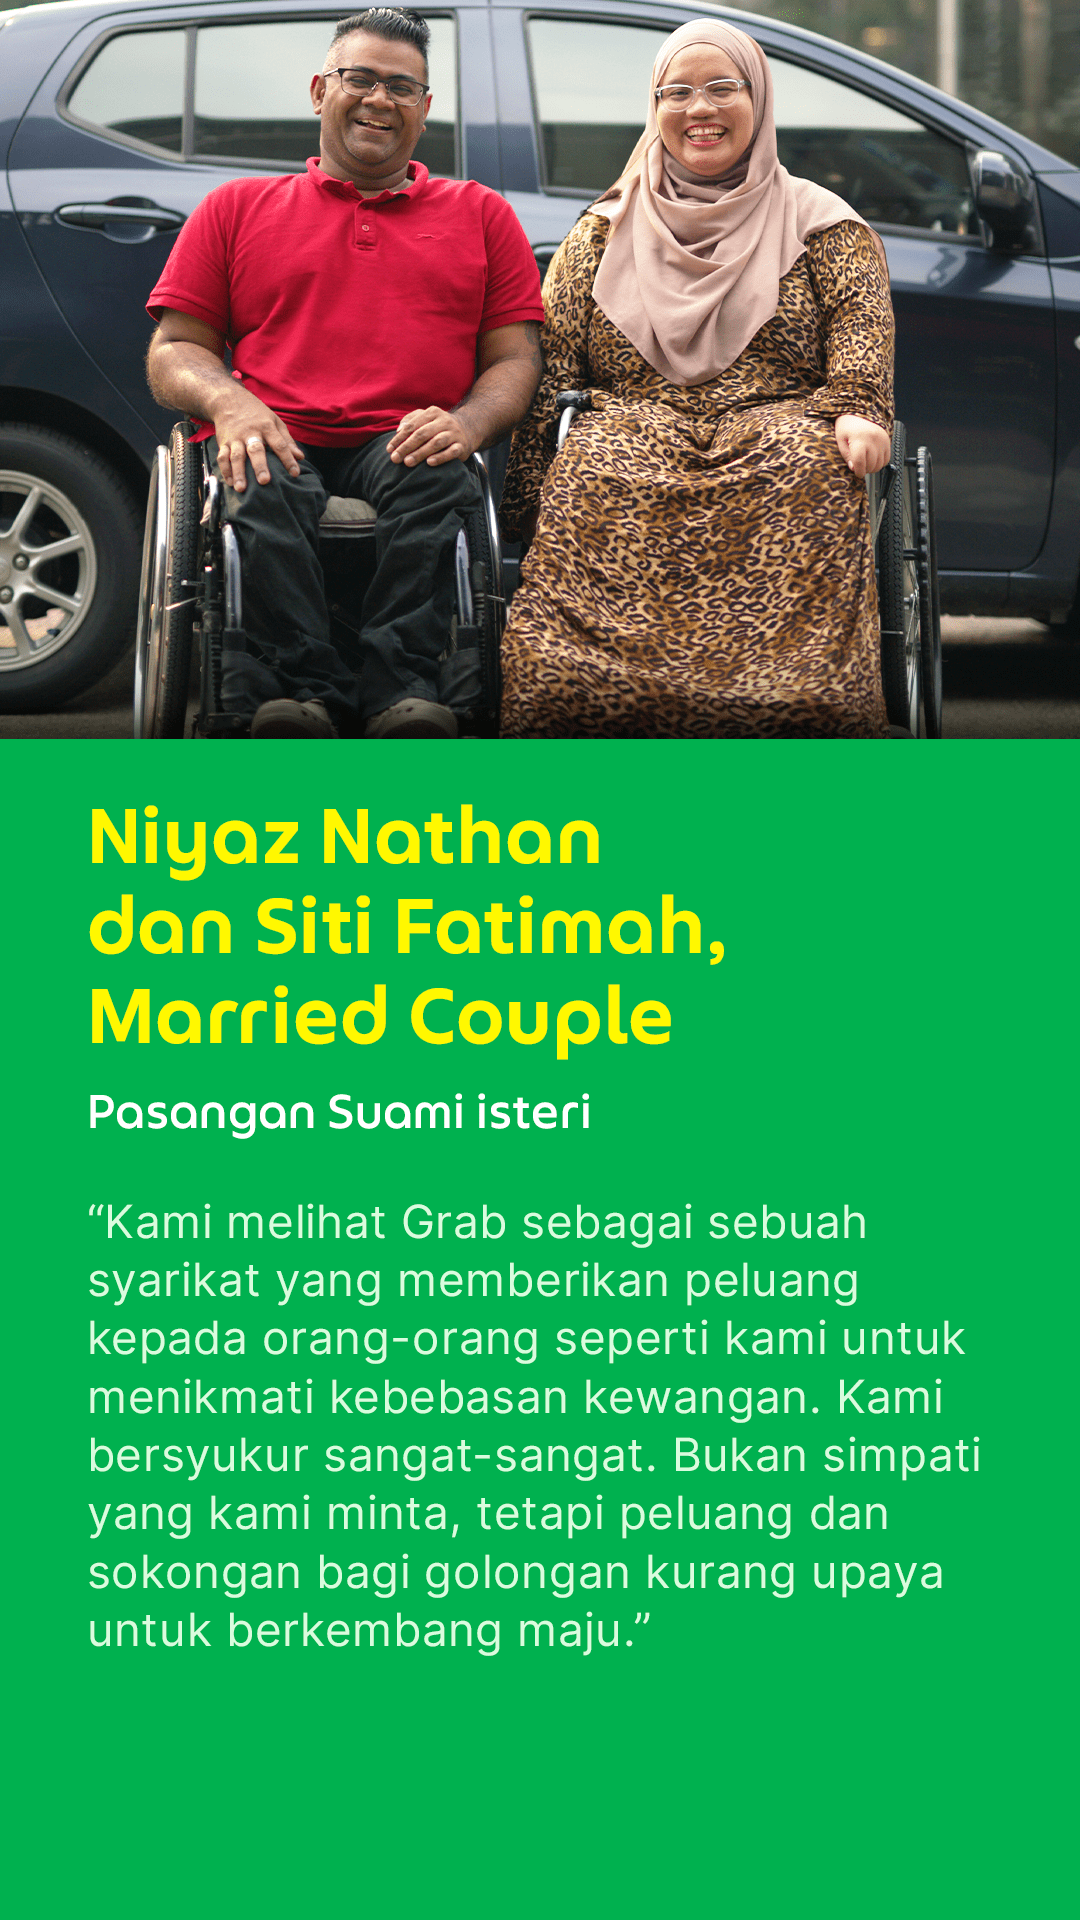 GrabAccess Partner Stories - Niyaz and Siti